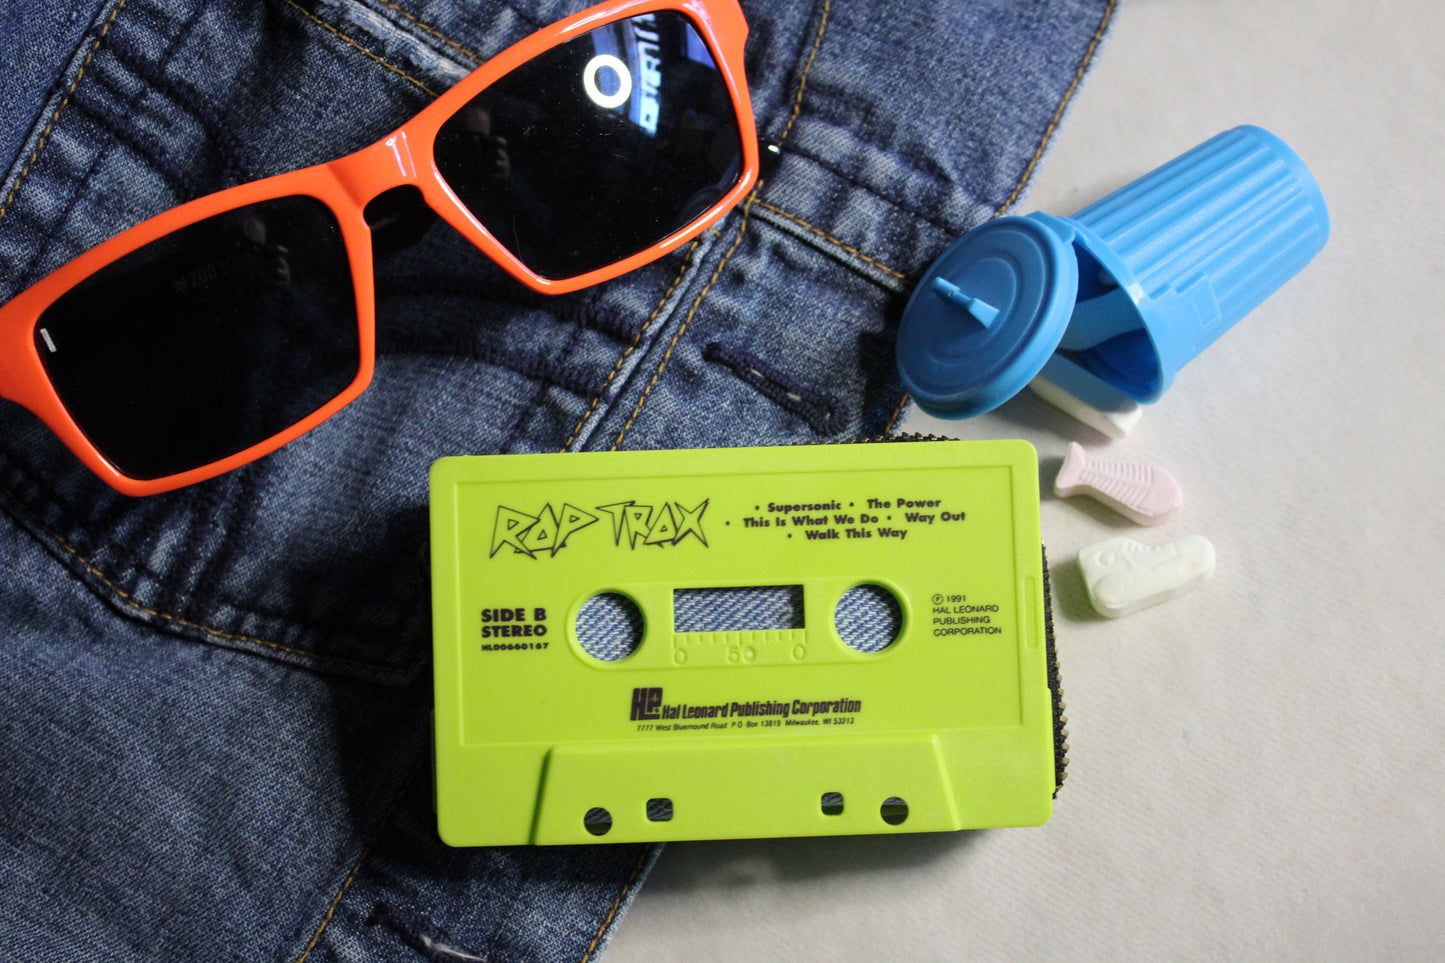 Cassette Wallet - Rap Trax